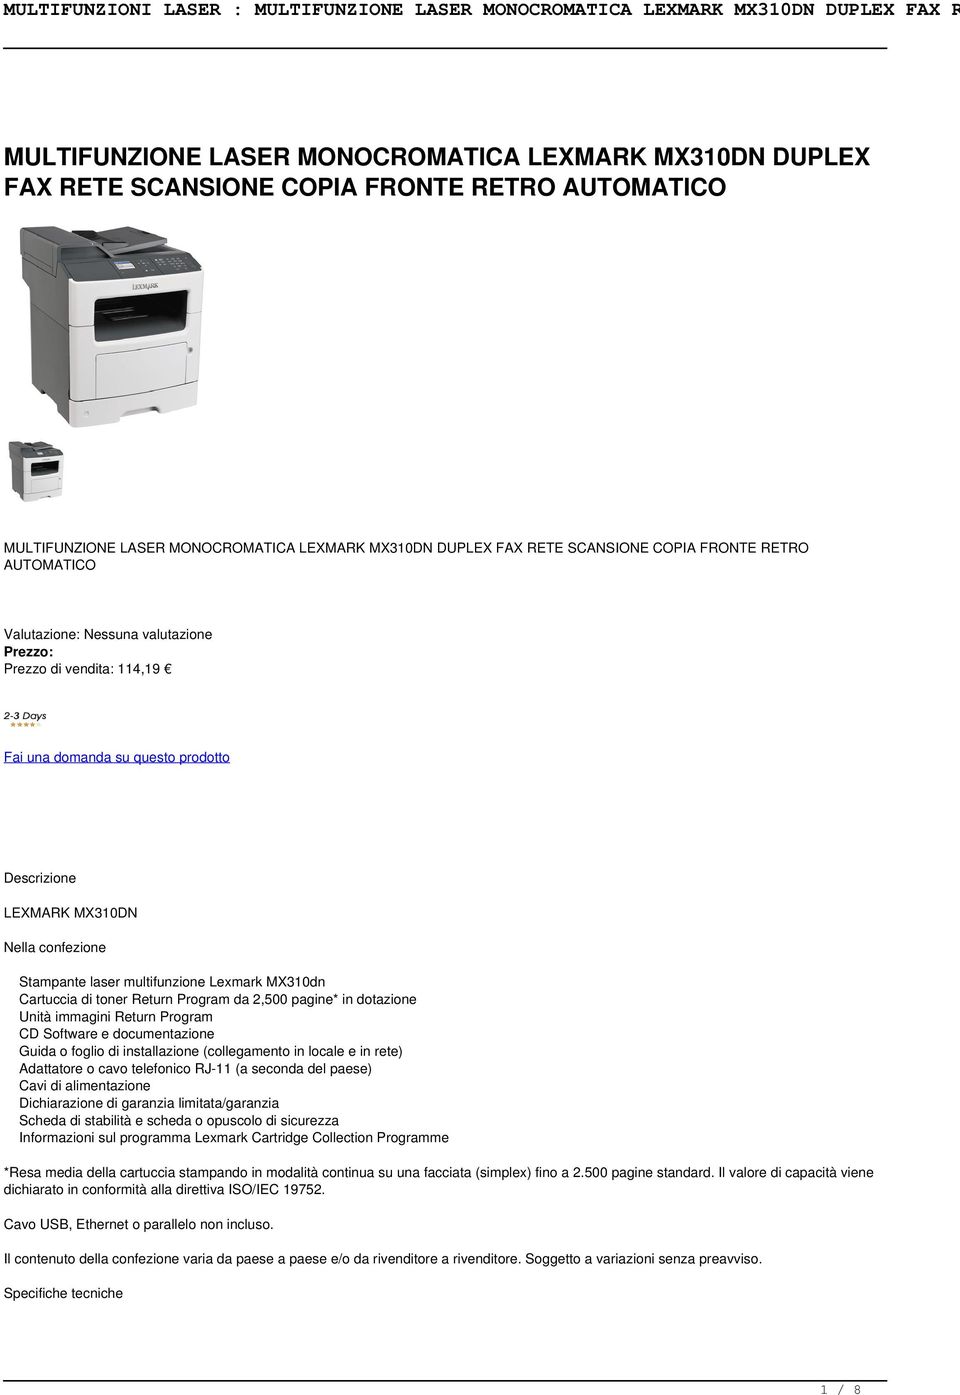 Lexmark MX310dn Cartuccia di toner Return Program da 2,500 pagine* in dotazione Unità immagini Return Program CD Software e documentazione Guida o foglio di installazione (collegamento in locale e in